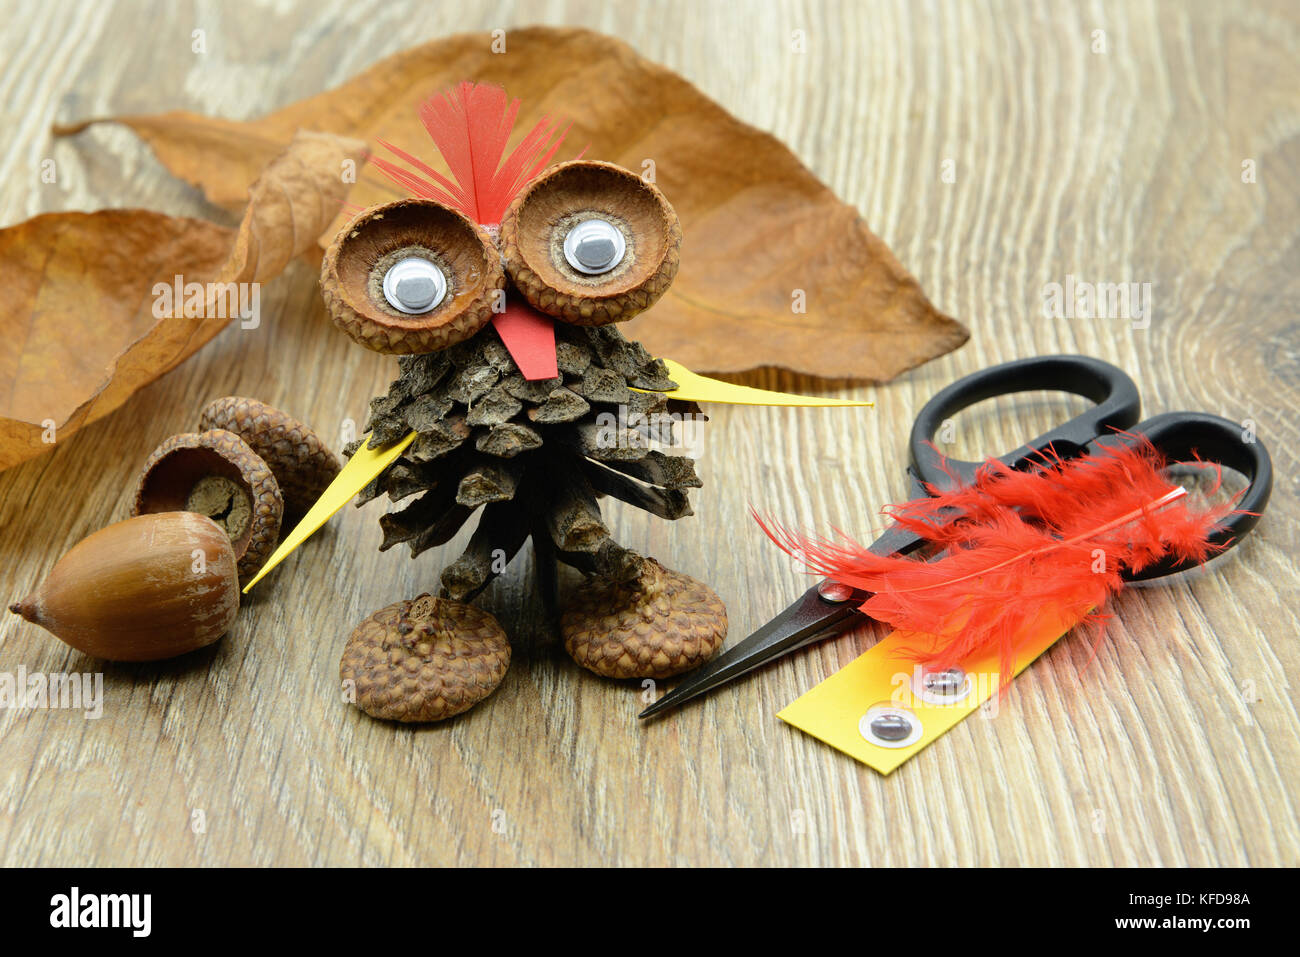 Bricoler un hibou avec cône de pin, acorn et papier avec des plumes. yeux en plastique, papier et scissor de côté. Banque D'Images